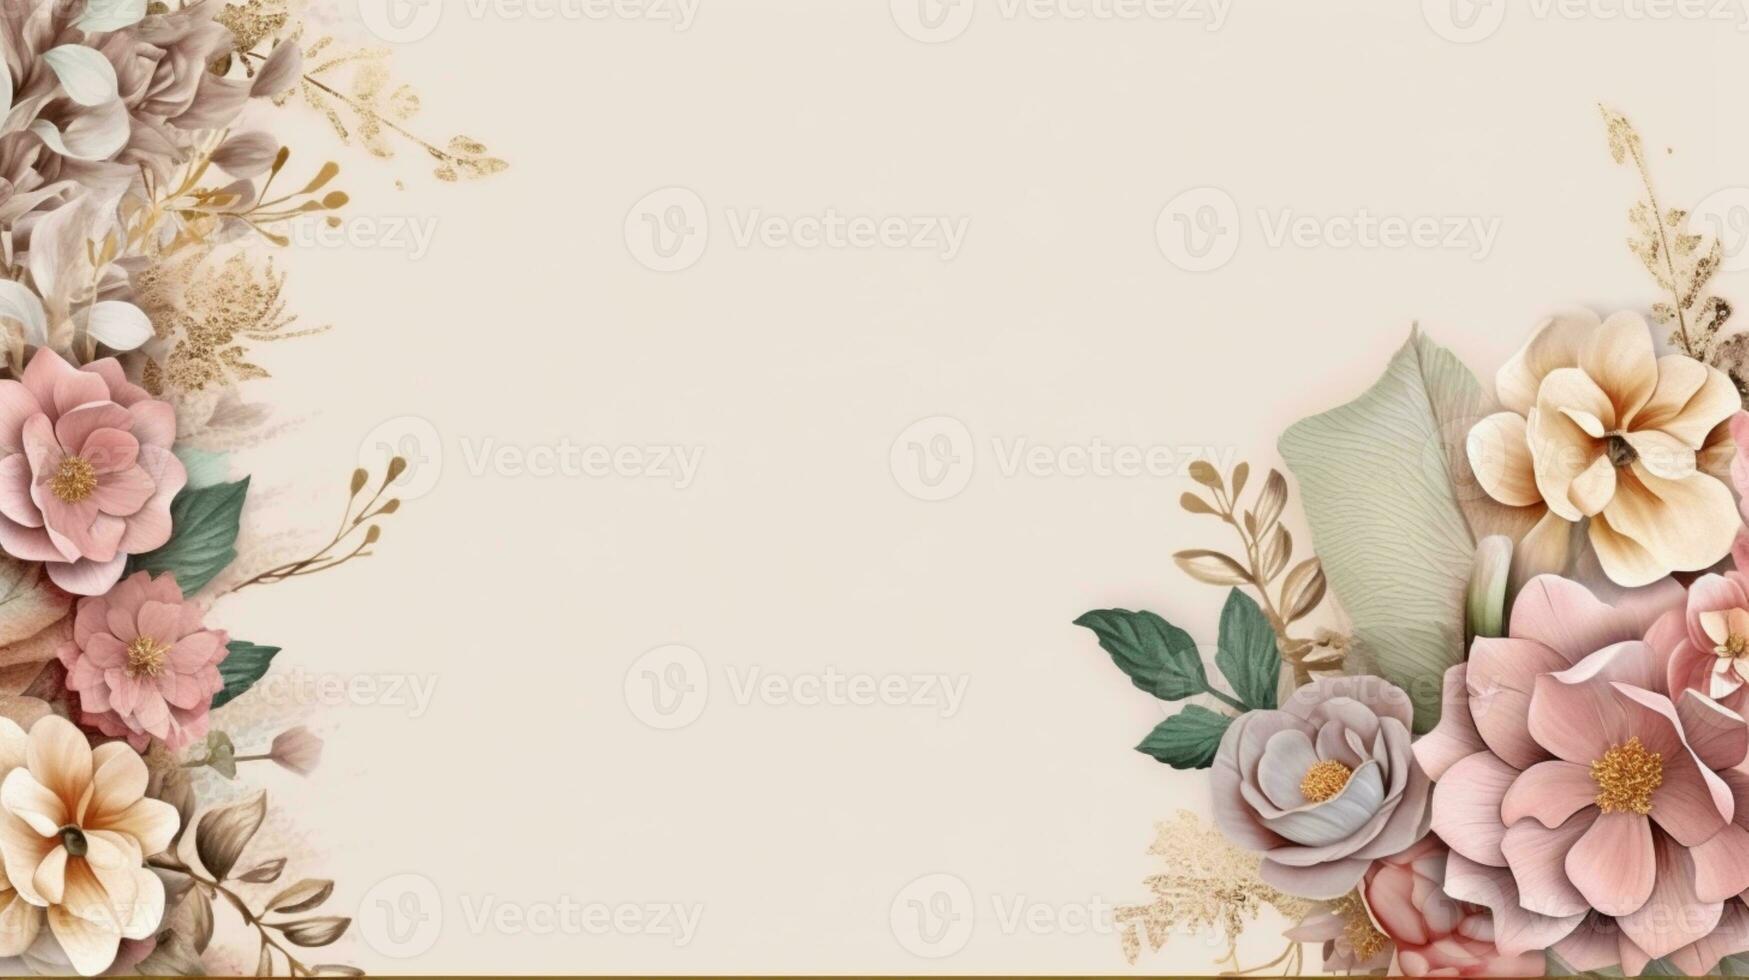 wedding invitation flower decoration and white background photo